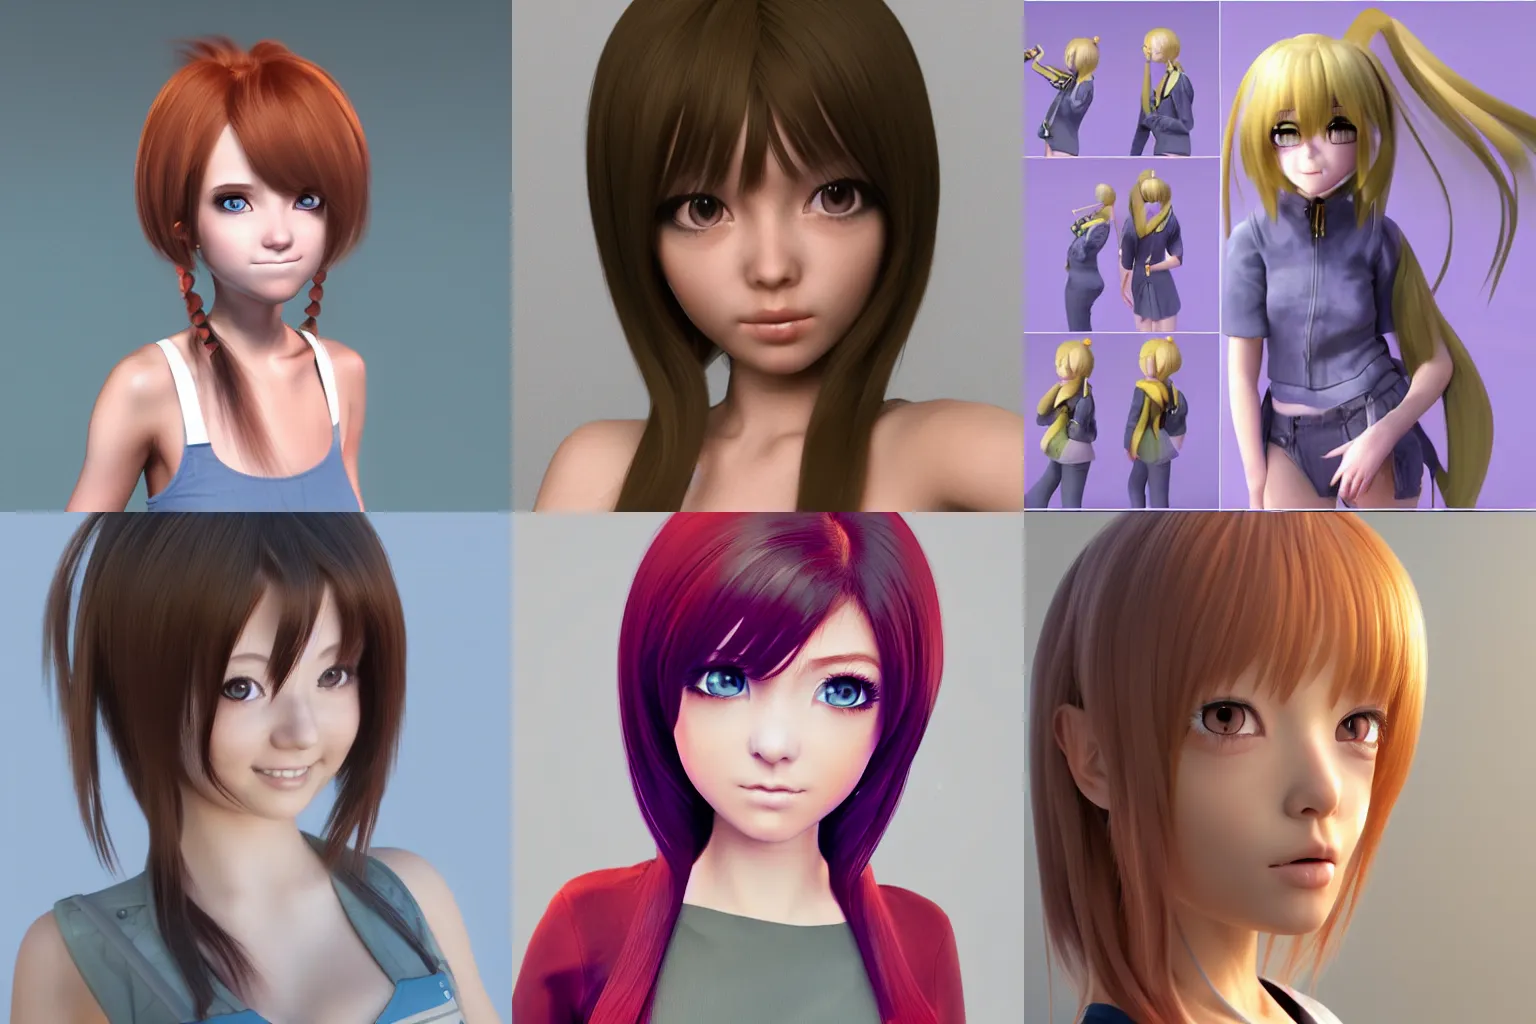 Blender 2.93 】Siesta Modeling Character anime creation | Gjnko - YouTube